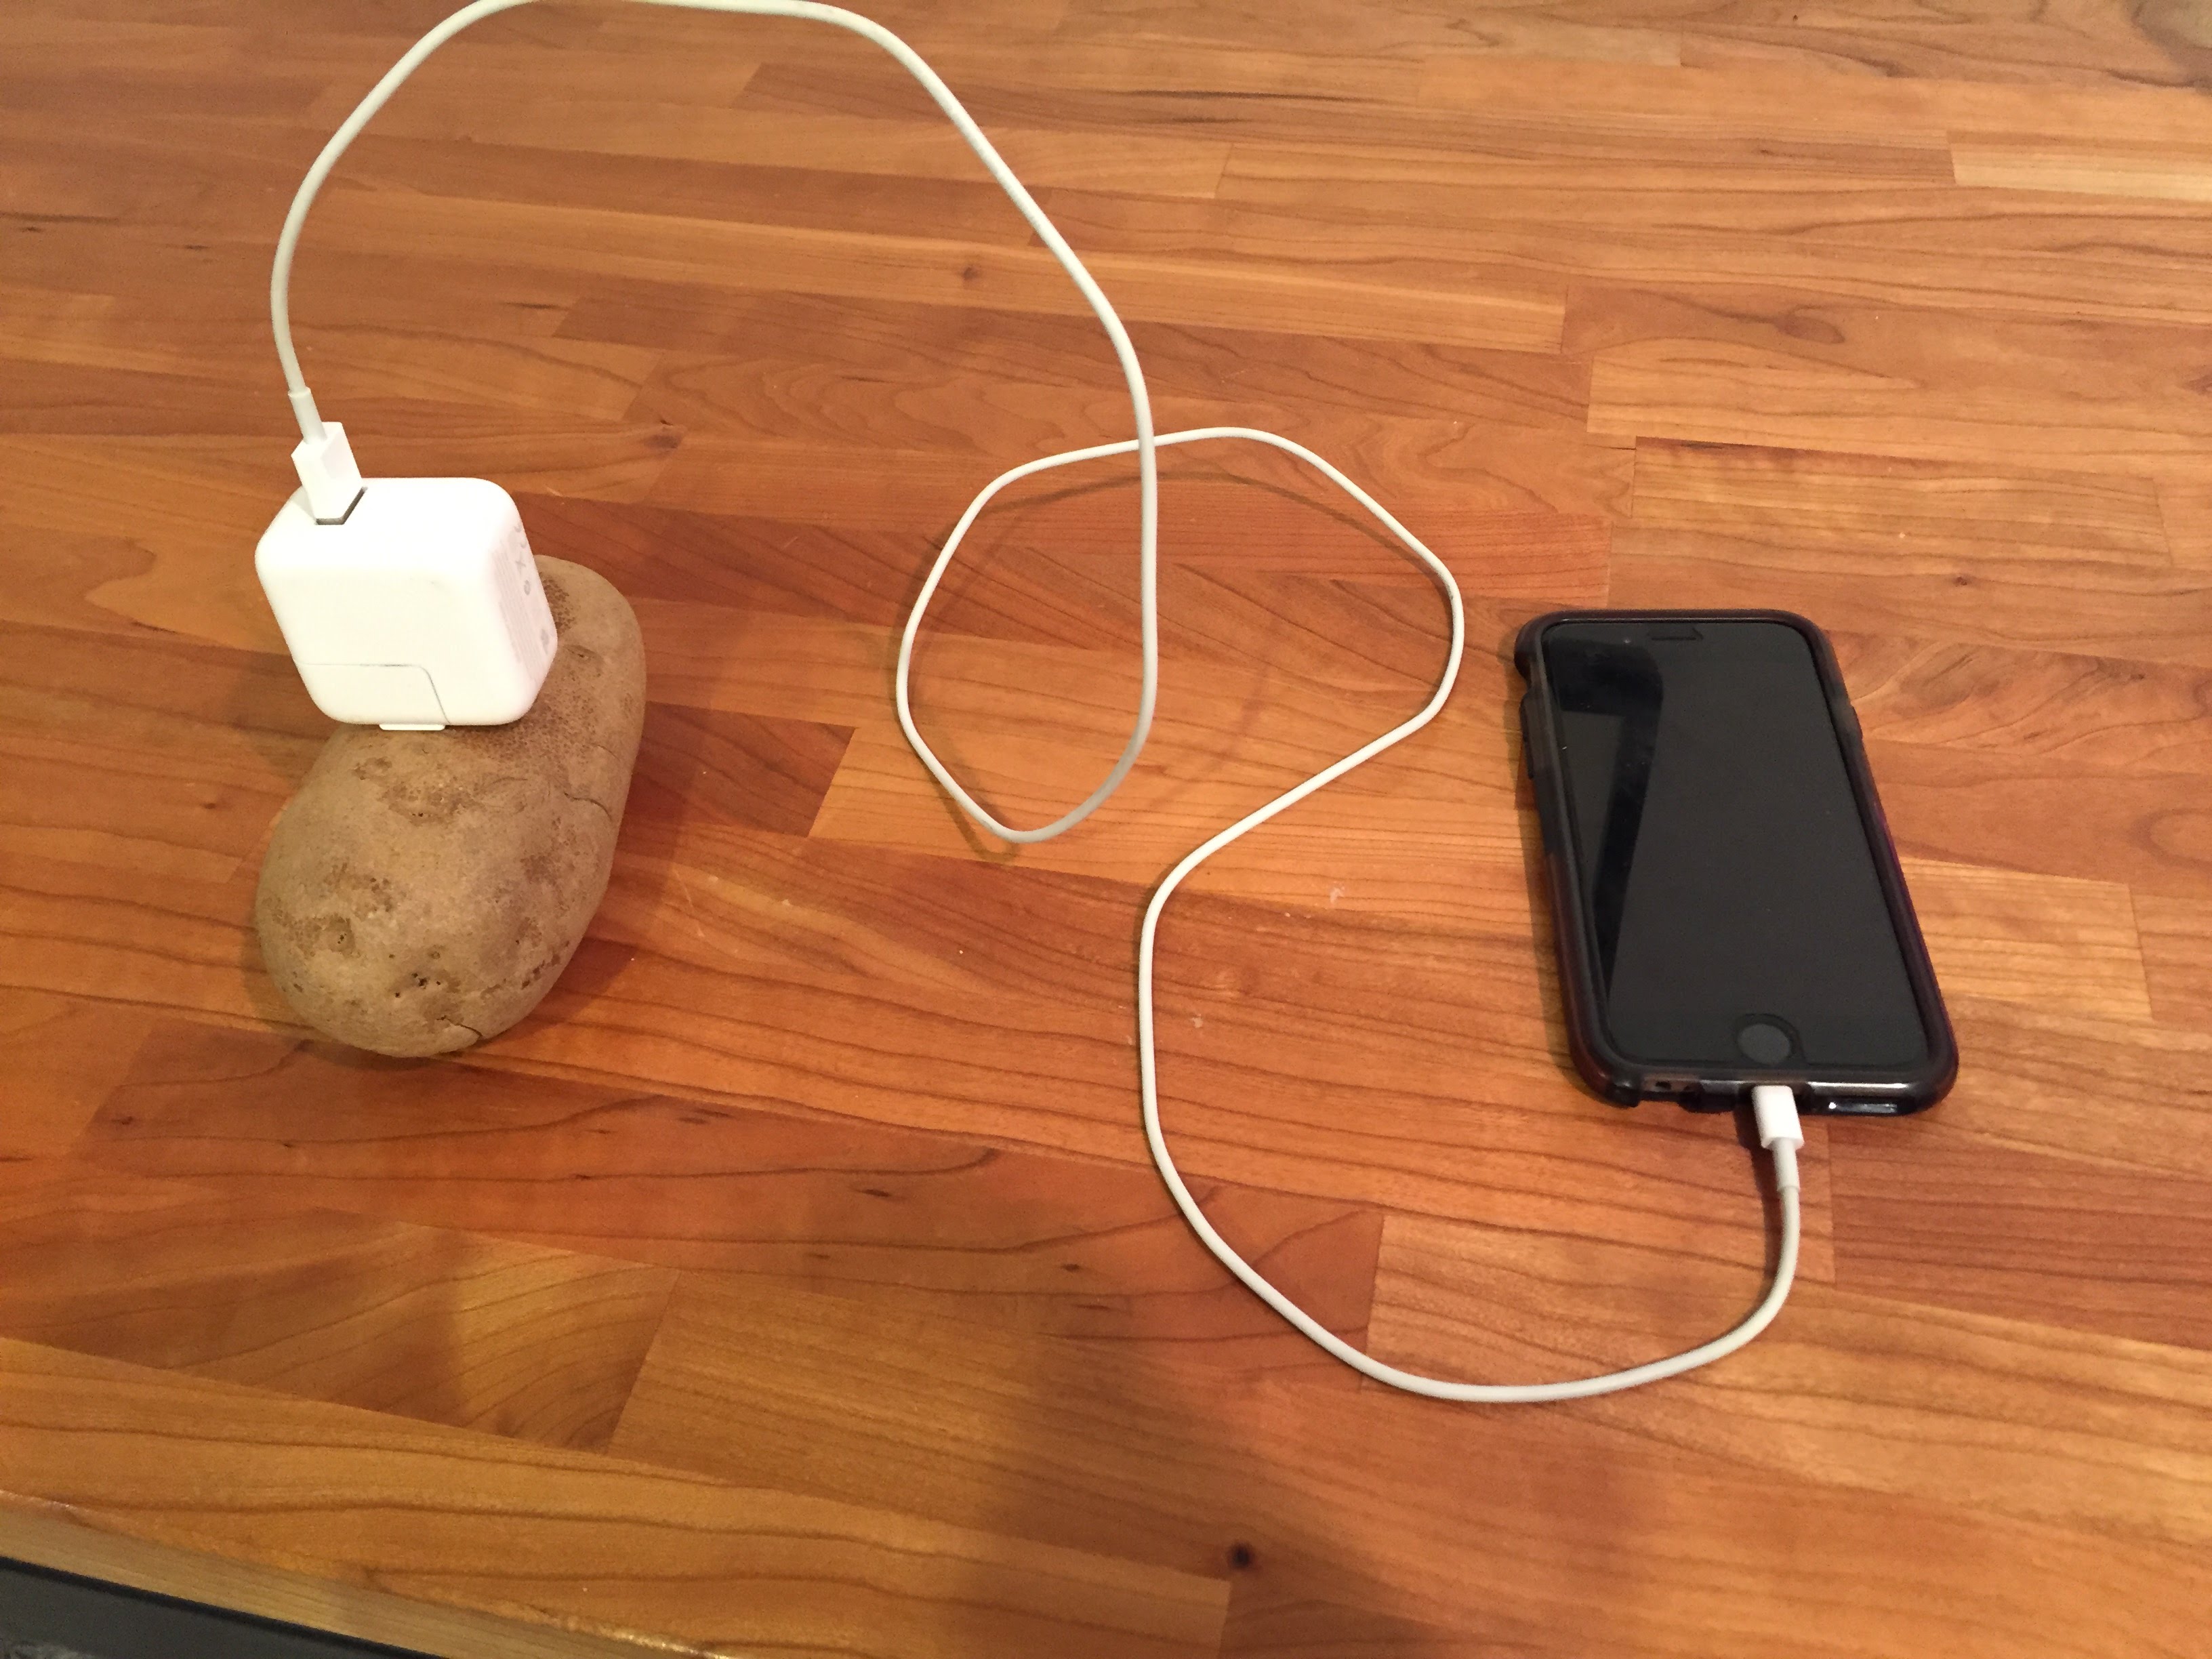 Надо на зарядку телефон. Зарядка для телефона. Зарядка от картошки. Зарядка из картошки для телефона. Зарядник телефона из картошки.